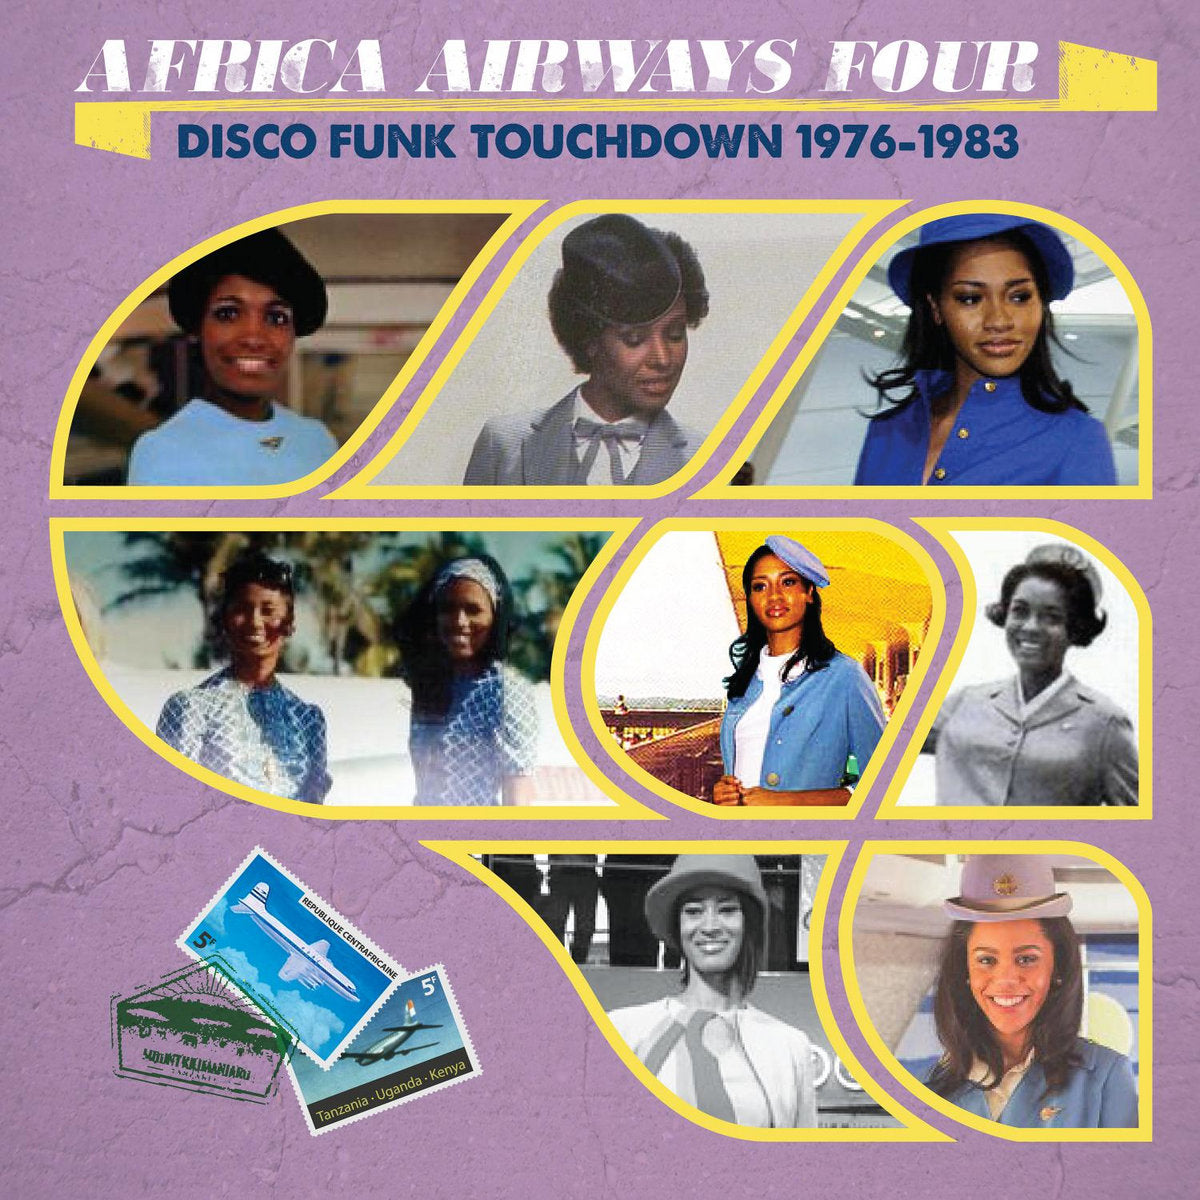 Africa Airways Four - Disco funk touchdown 1976-1983